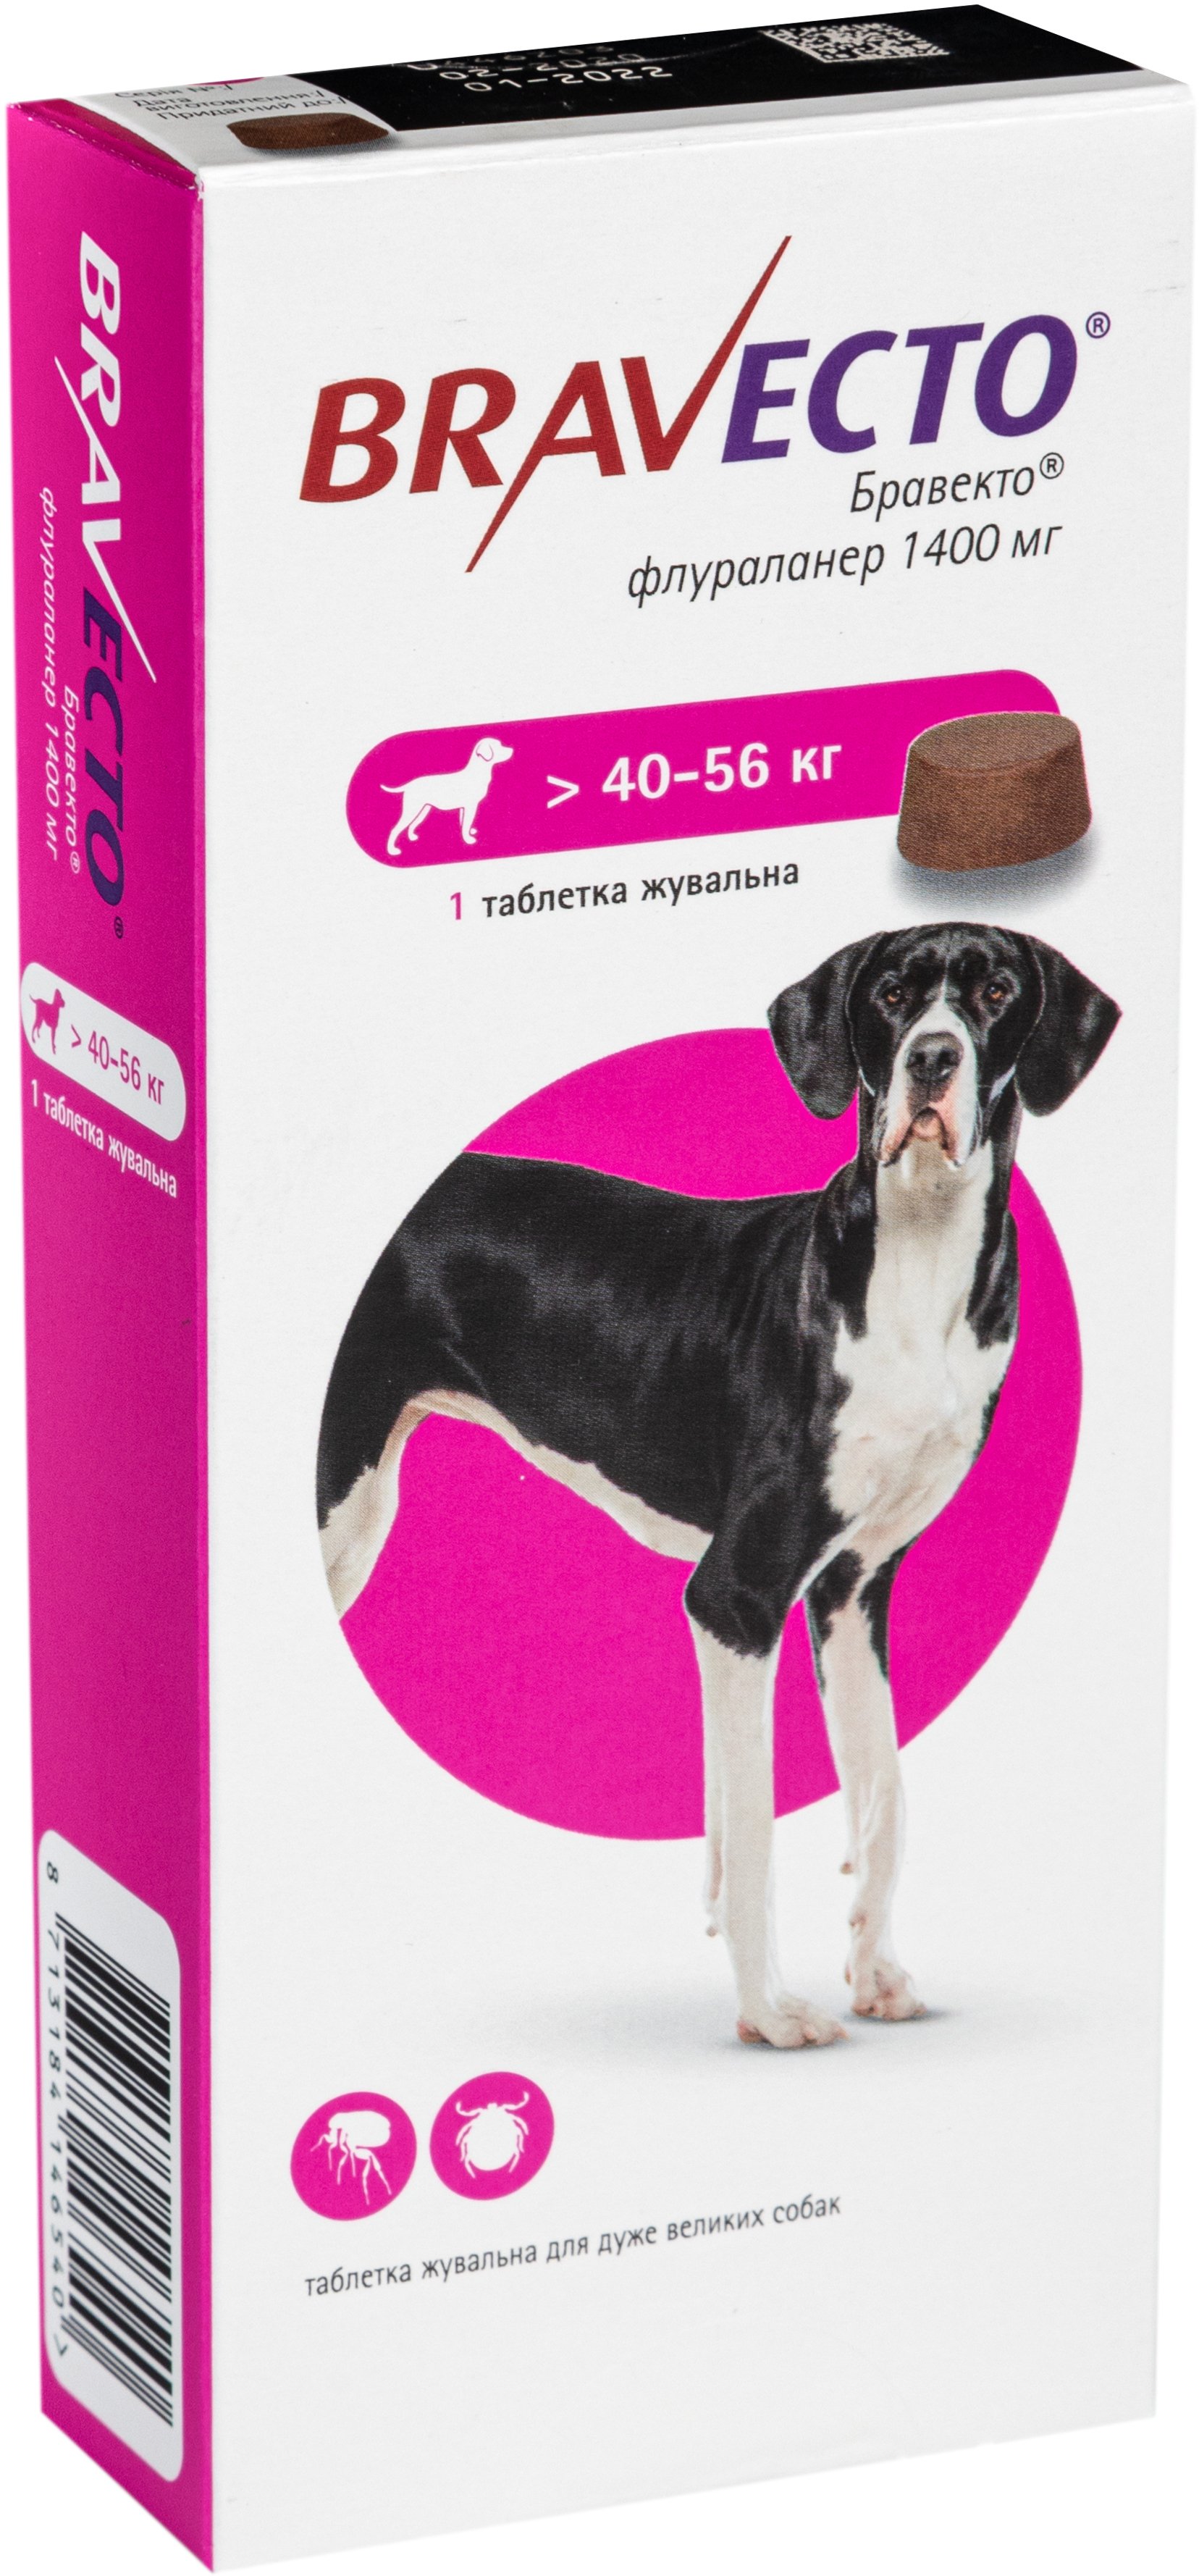 Жевательная таблетка Bravecto от блох и клещей для собак с весом 40-56 кг - фото 2